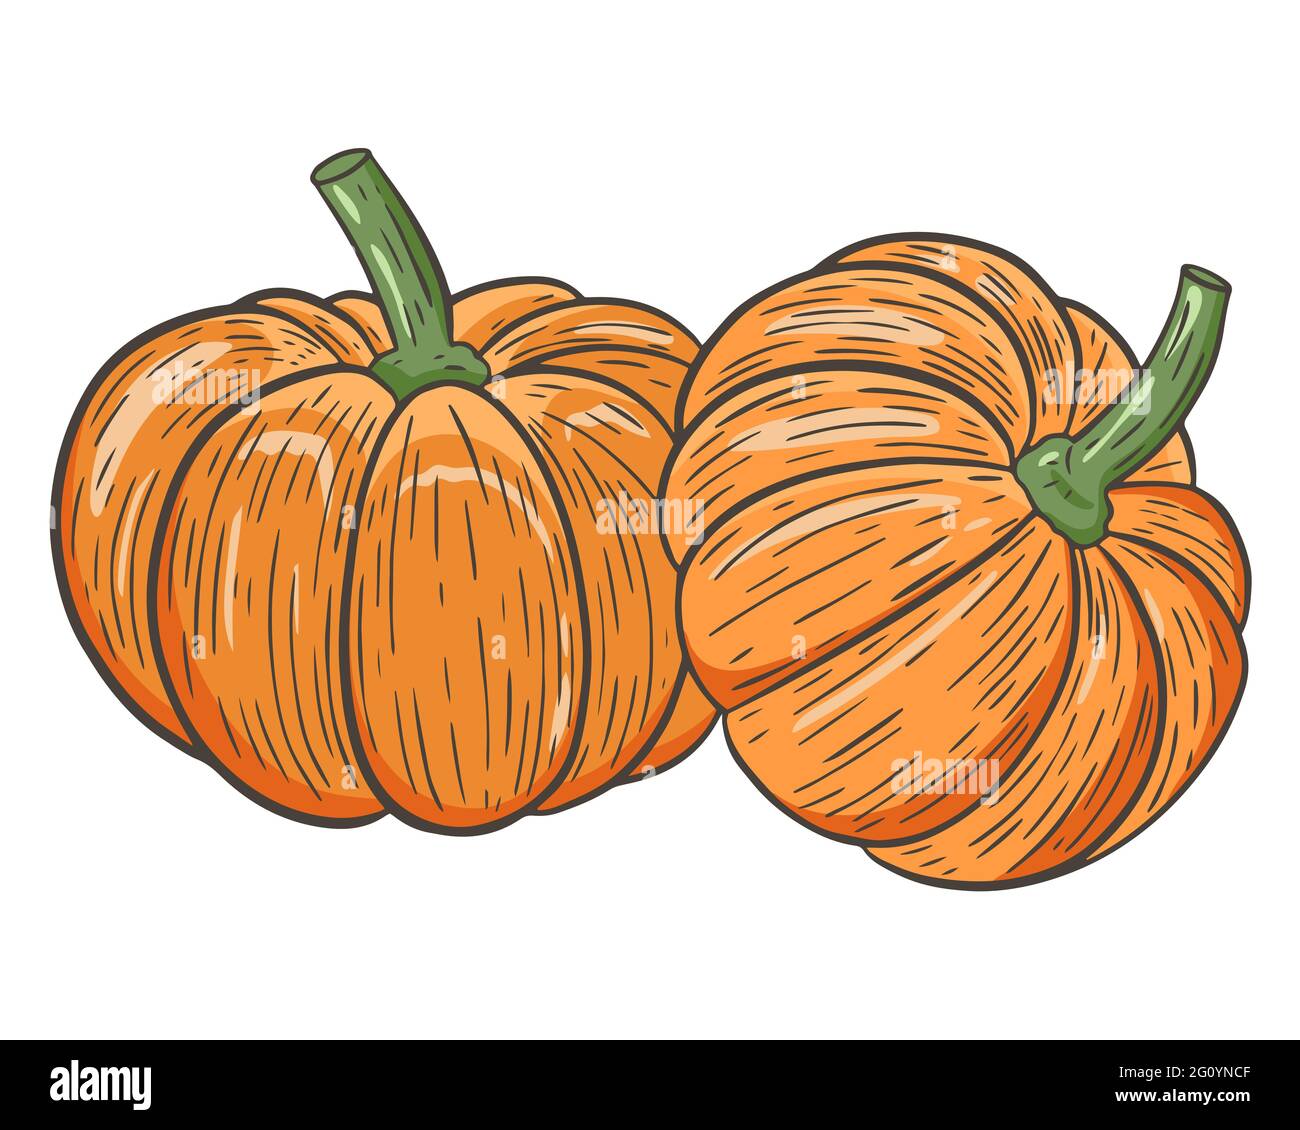 Due zucche, vettoriale. Verdure di stagione autunnali. La zucca è rotonda e arancione. Disegno a mano. Caduta di frutta tradizionale. Illustrazione Vettoriale